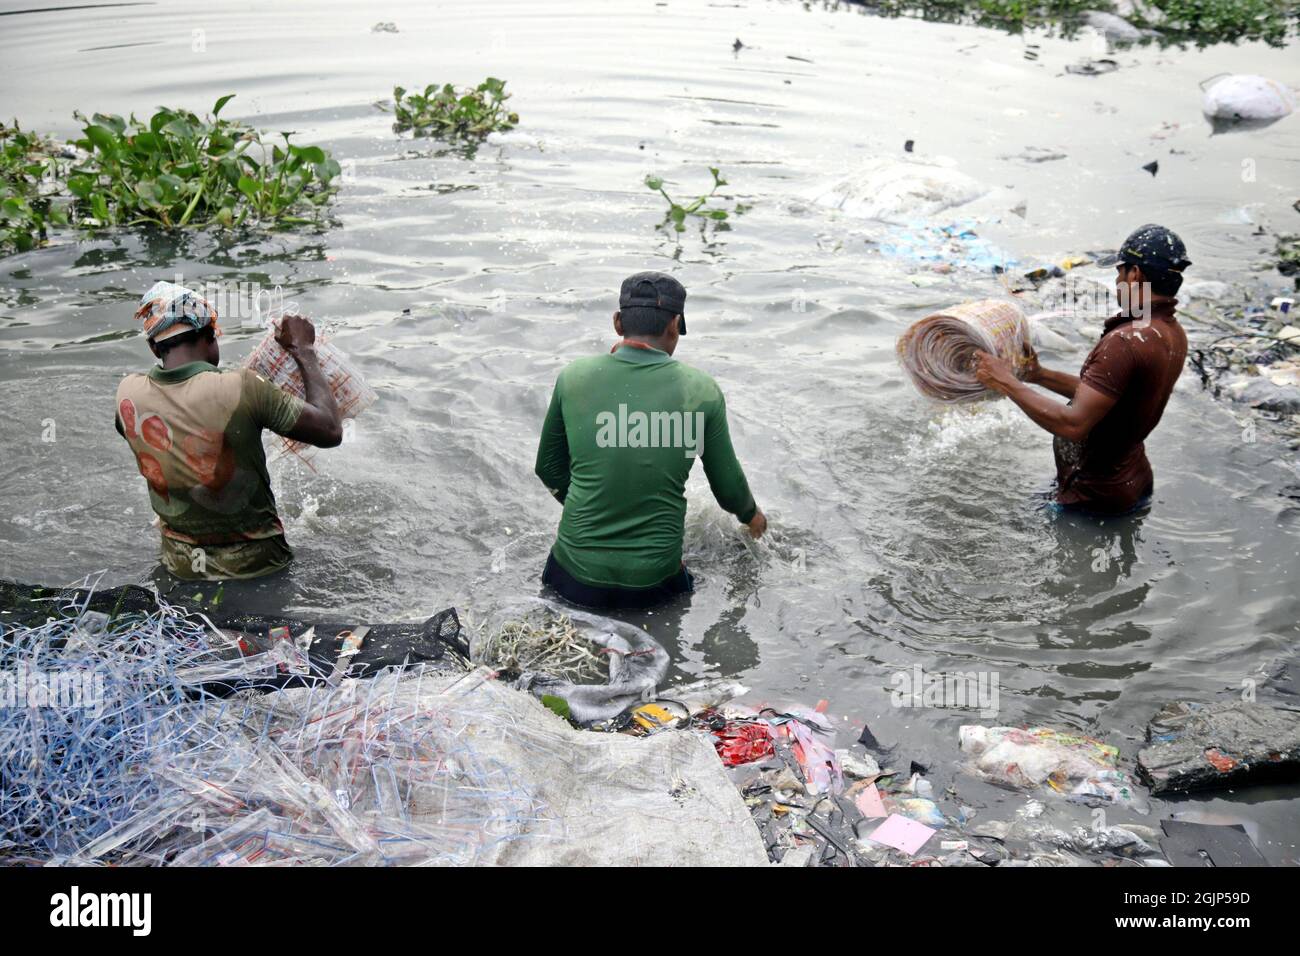 Non esclusiva: CITTÀ DI DHAKA, BANGLADESH, 9 SETTEMBRE: I lavoratori hanno battuto l'acqua di stoffa lungo un fiume inquinato. I lavoratori lavano, squillano fuori e asciugano il panno alon Foto Stock